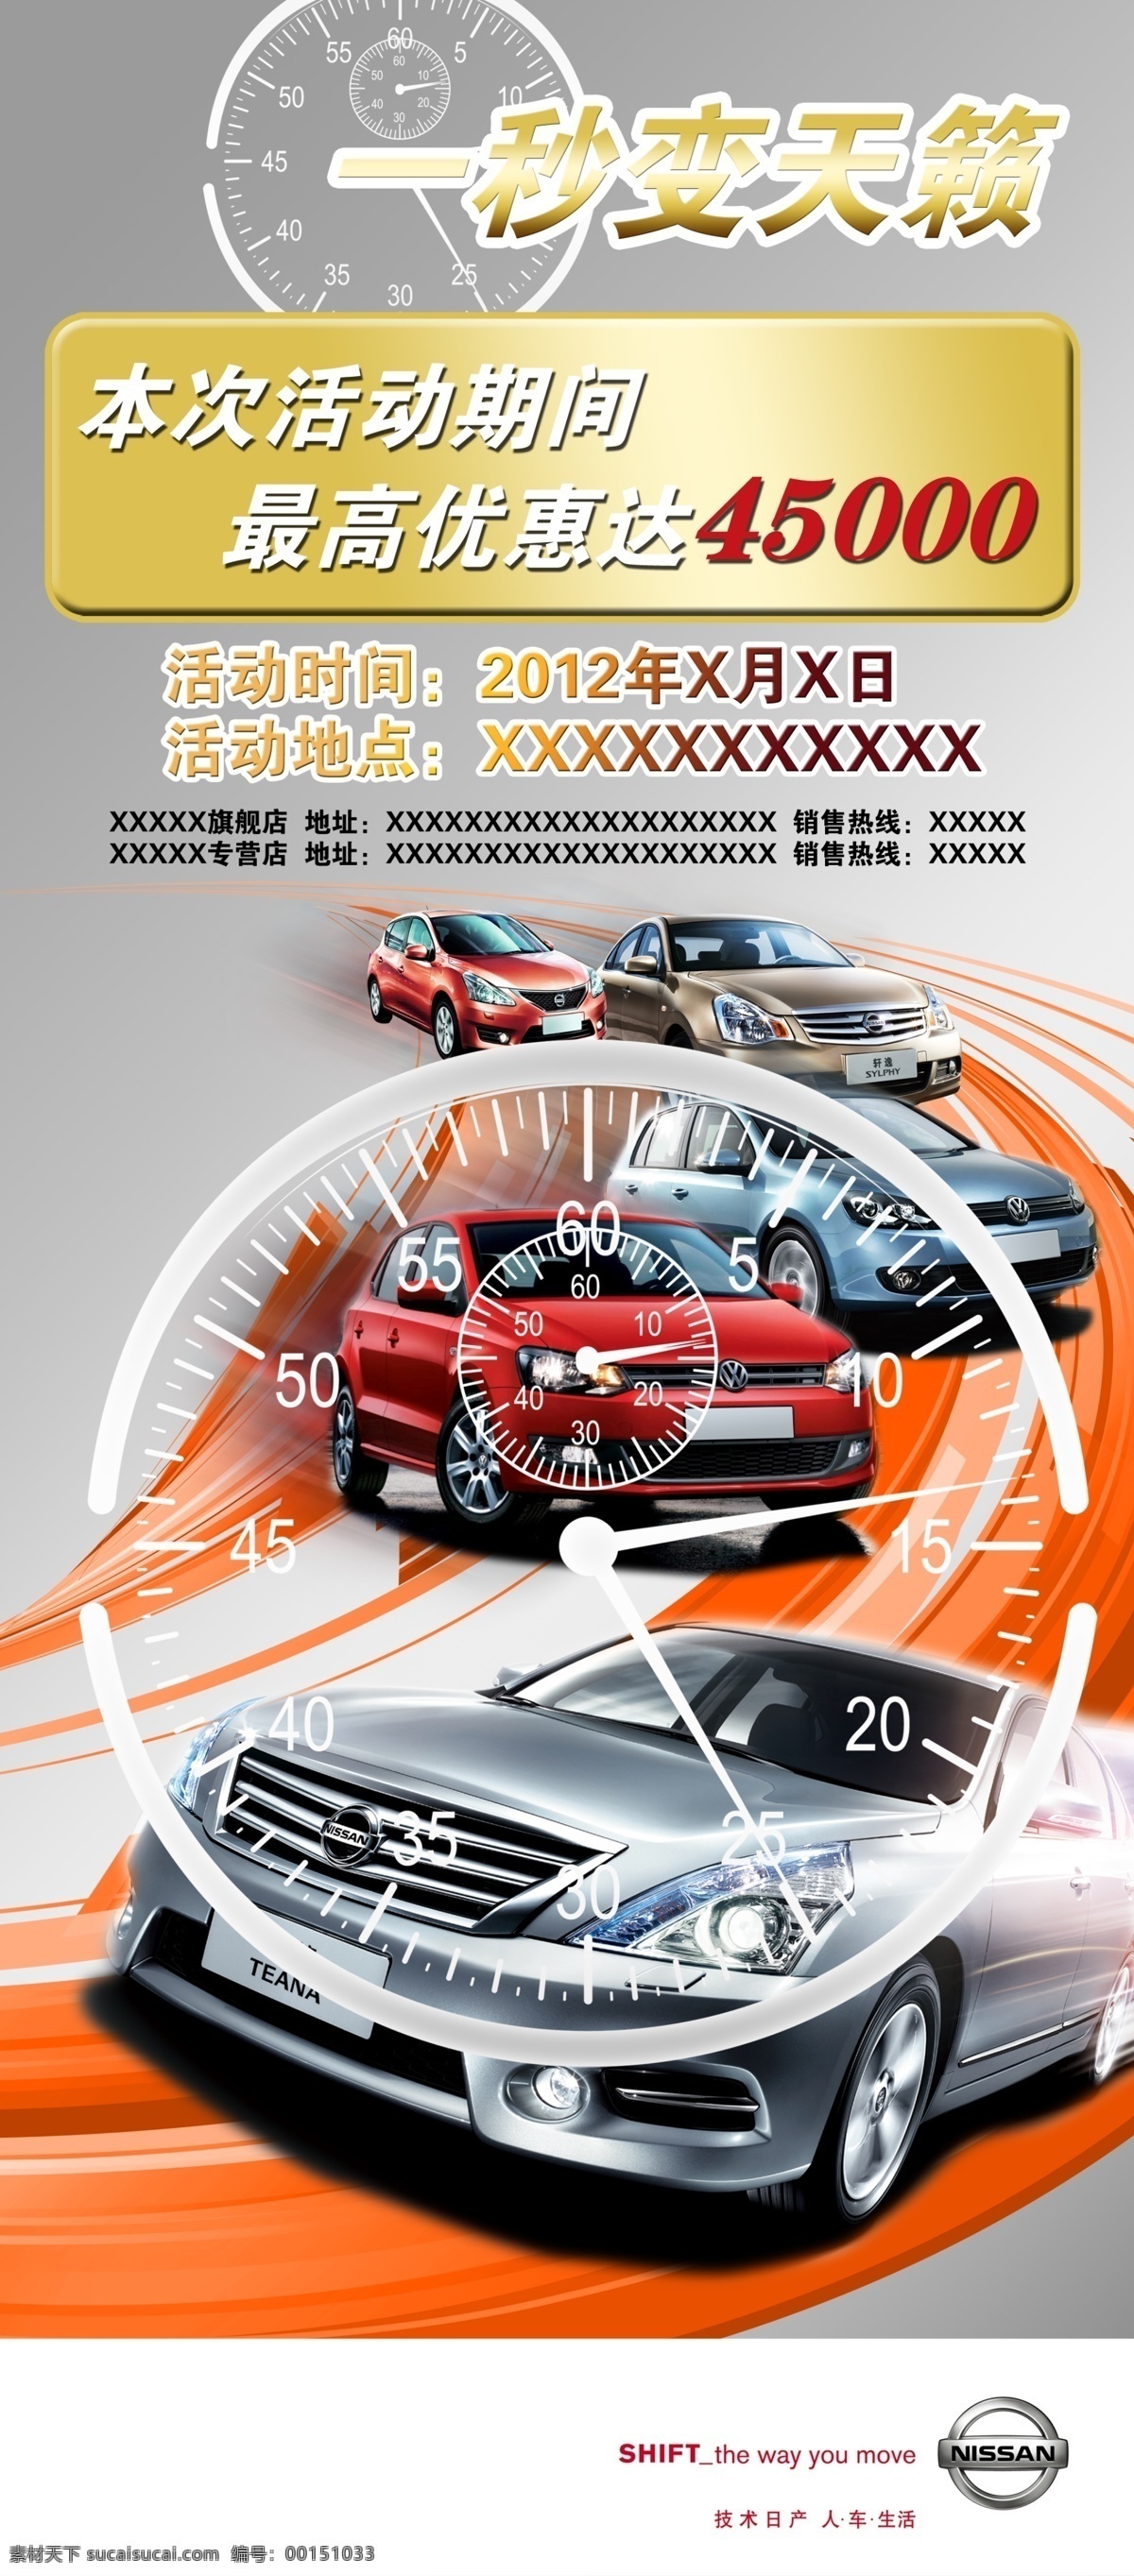 汽车 秒 变 天籁 新款 广告设计模板 秒表 优惠 源文件 其他海报设计